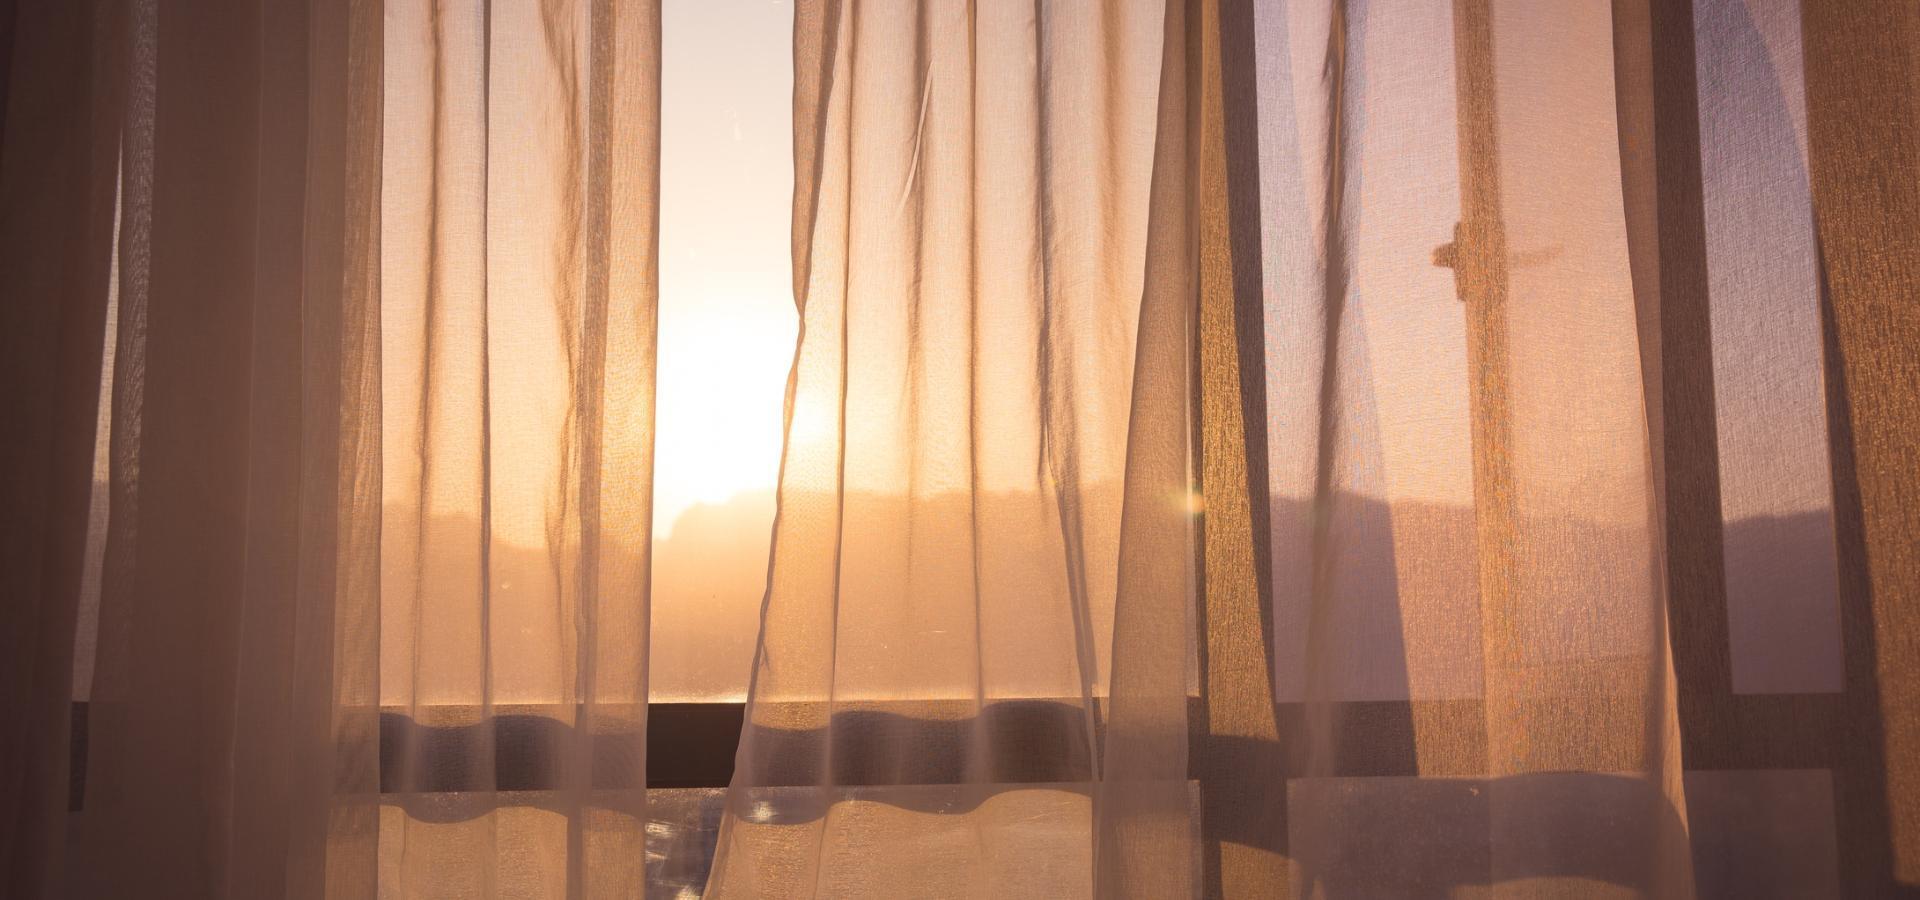 Slider A - Slajd #3 - zachód słońca widziany przez okno